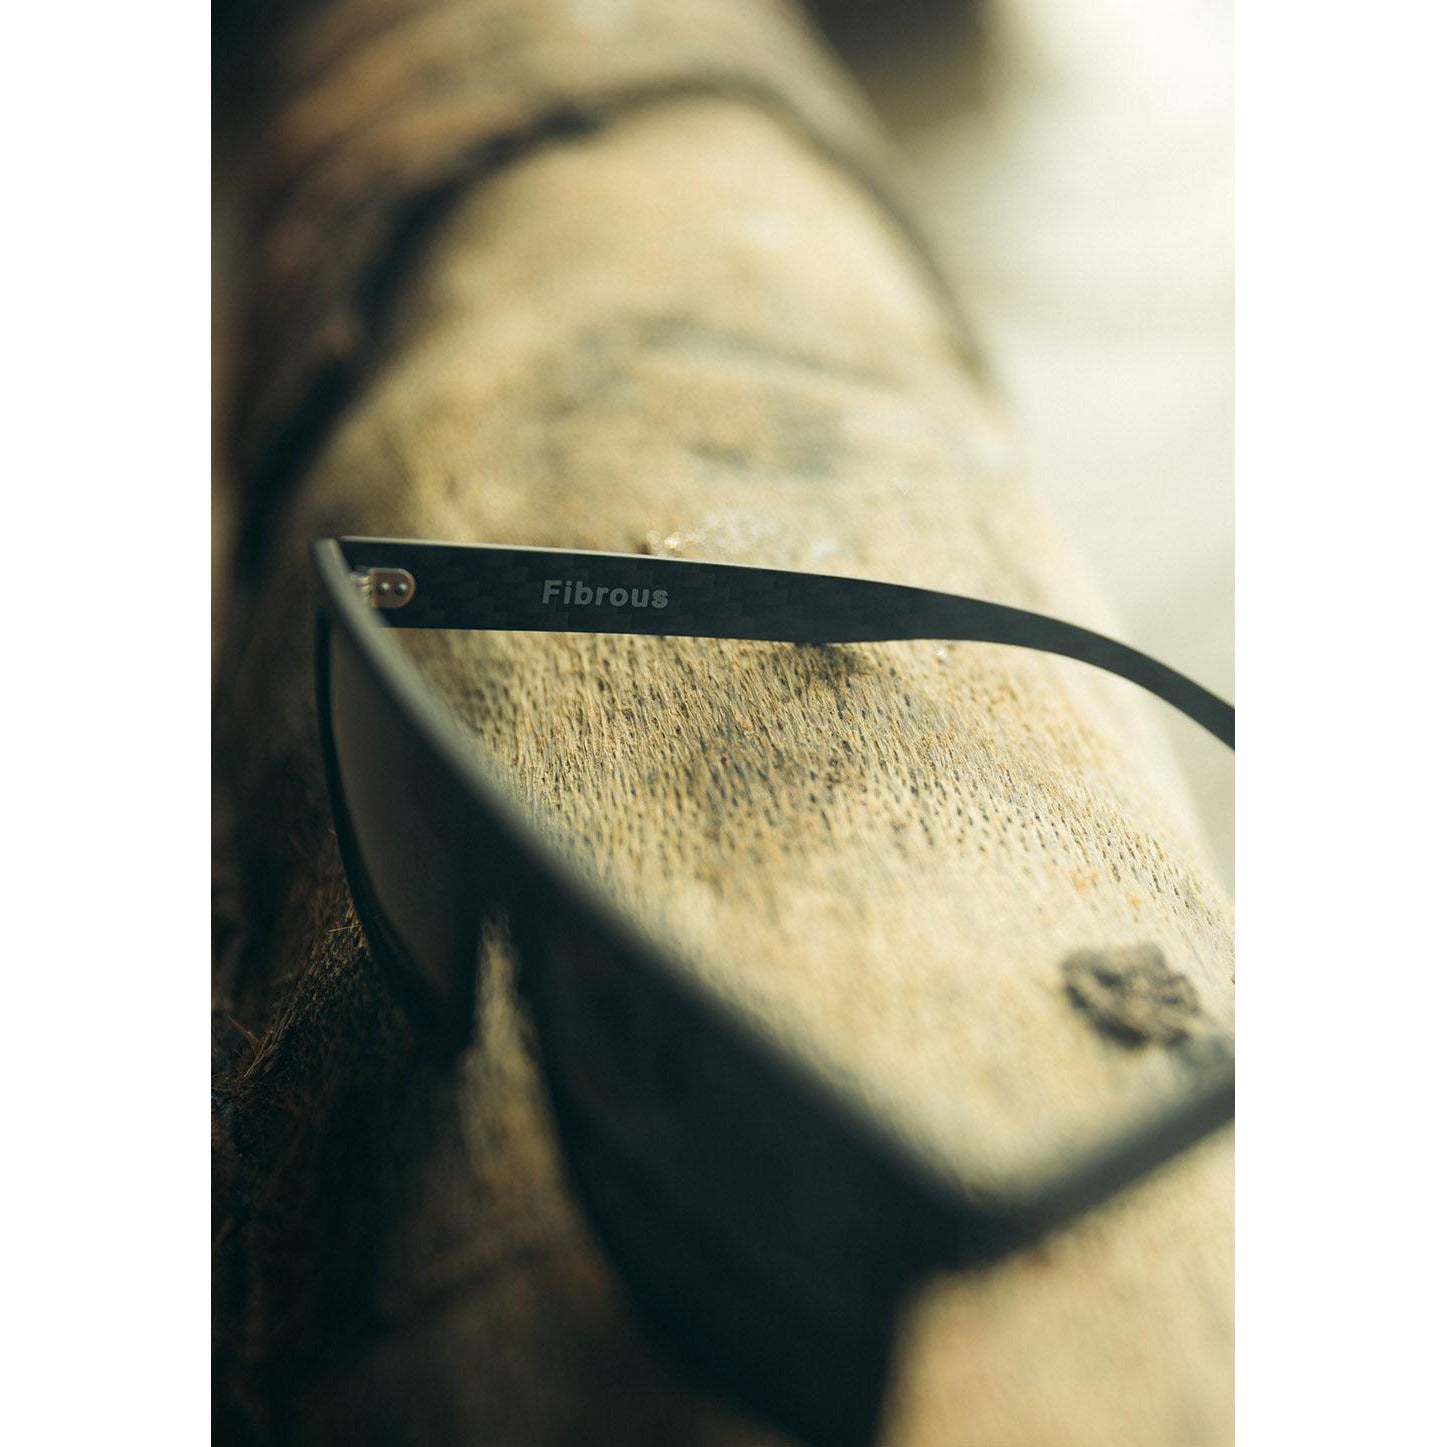 Men's Sunglasses Fibrous V4 Square - Carbon Fiber Sunglasses - KME means the very best